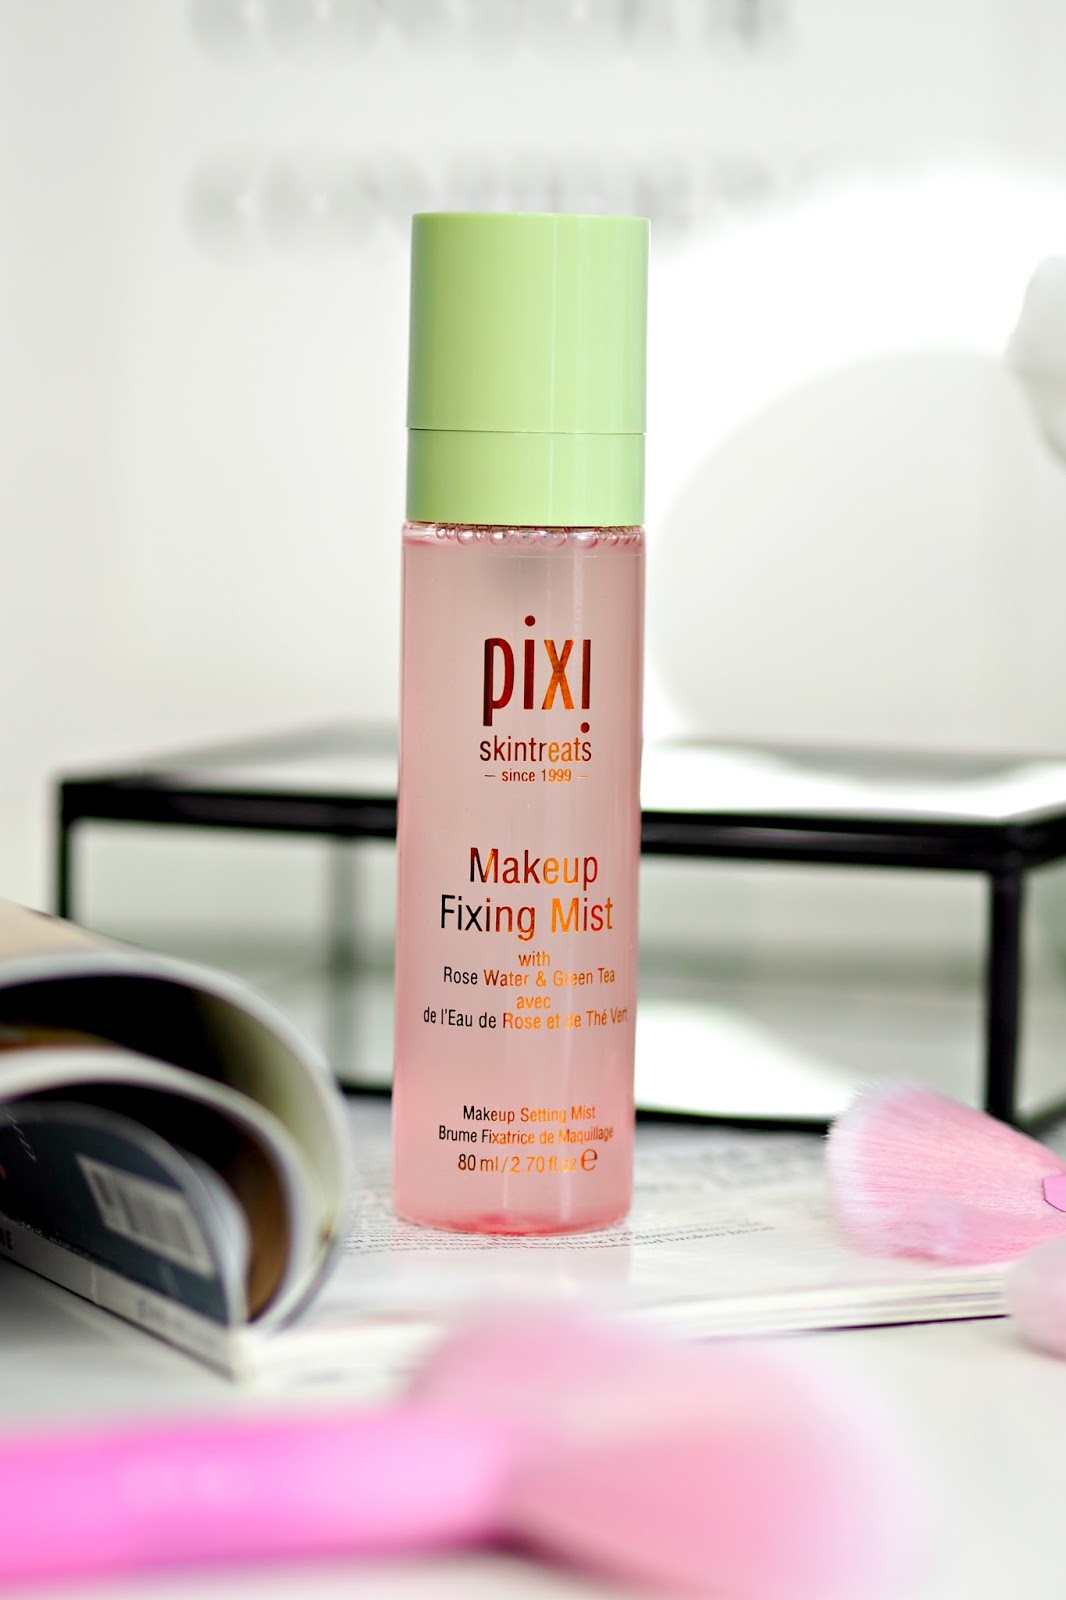 Pixi Makeup Fixing Mist